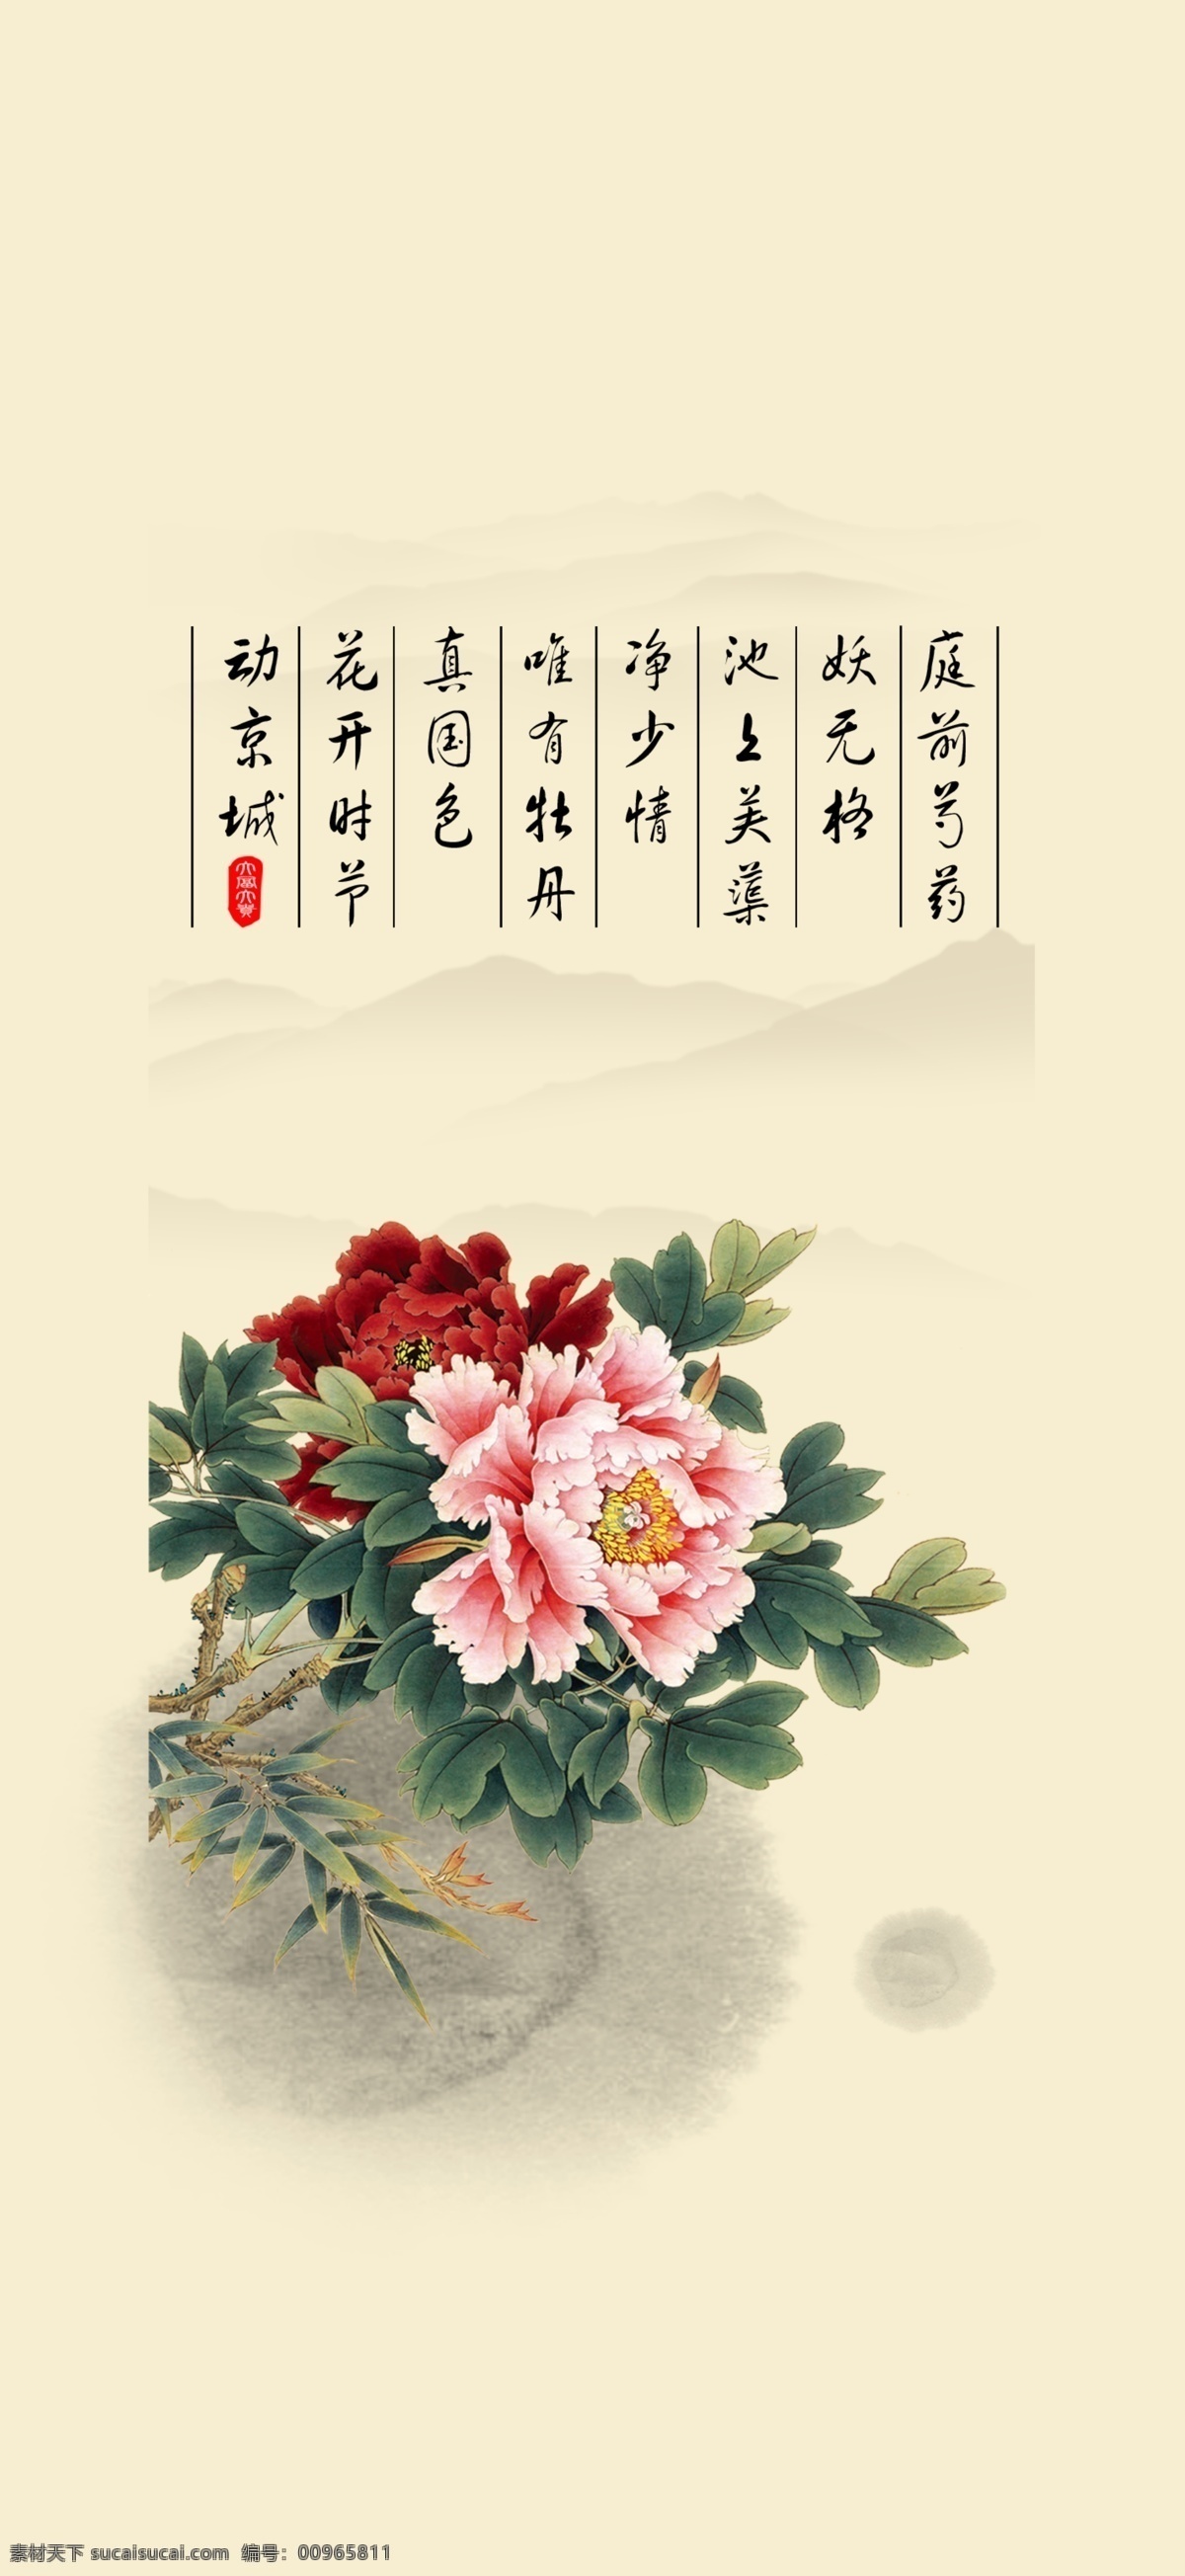 花开富贵 中国风 国画 中式图案 中国传统文化 牡丹 广告设计模板 源文件